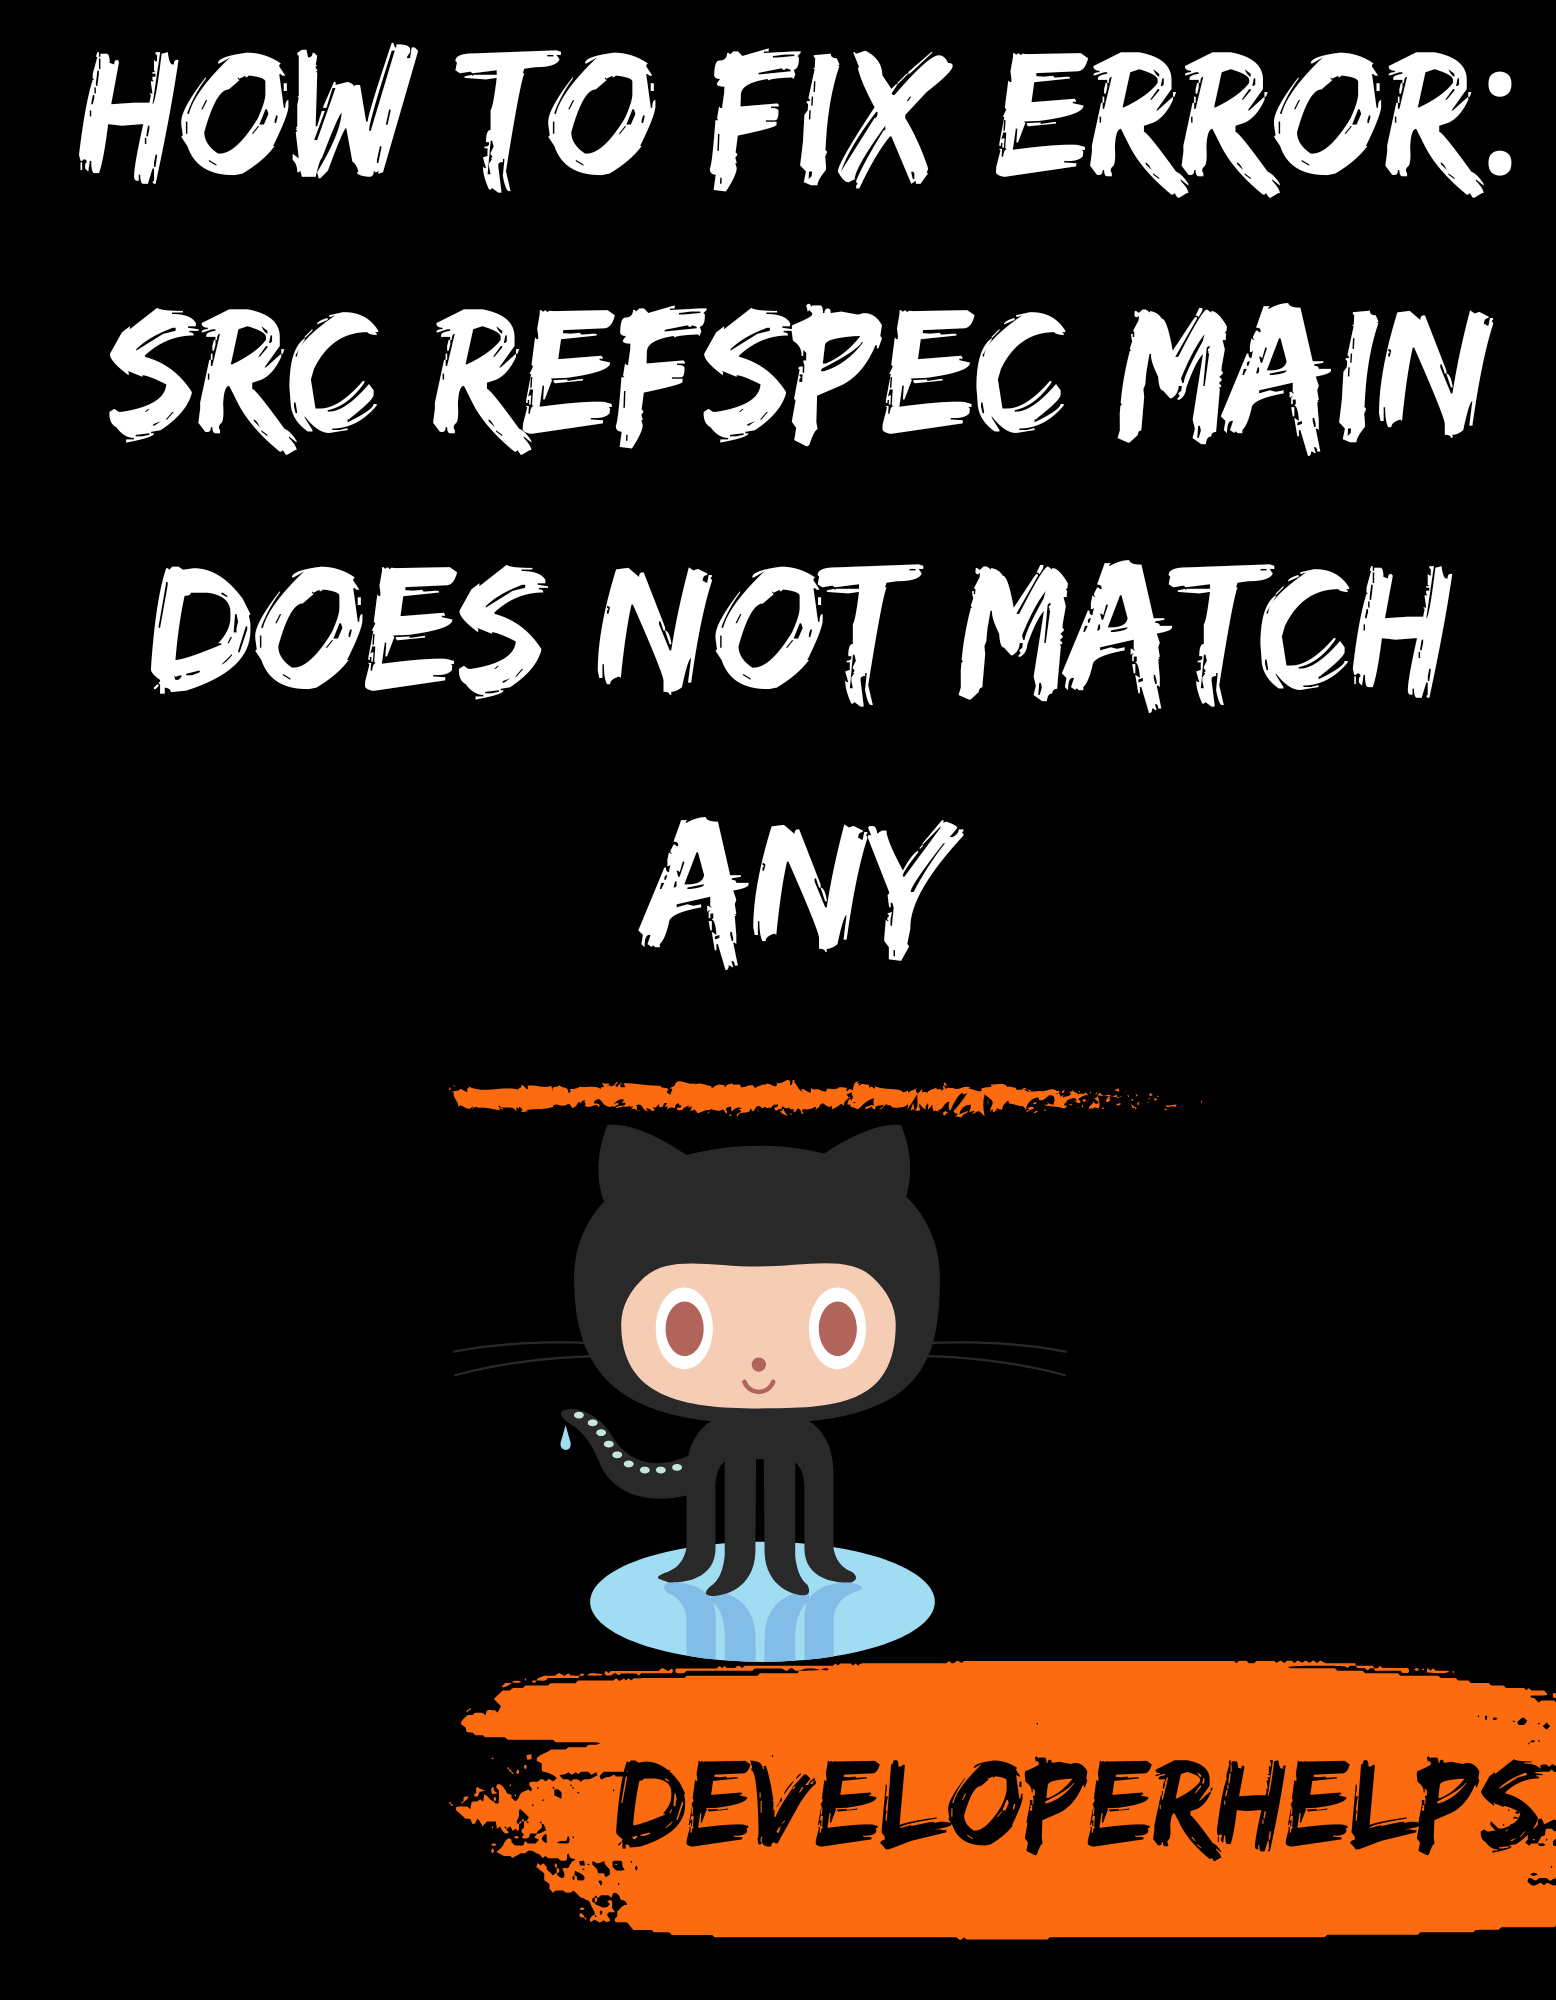 Git error: src refspec main does not match any